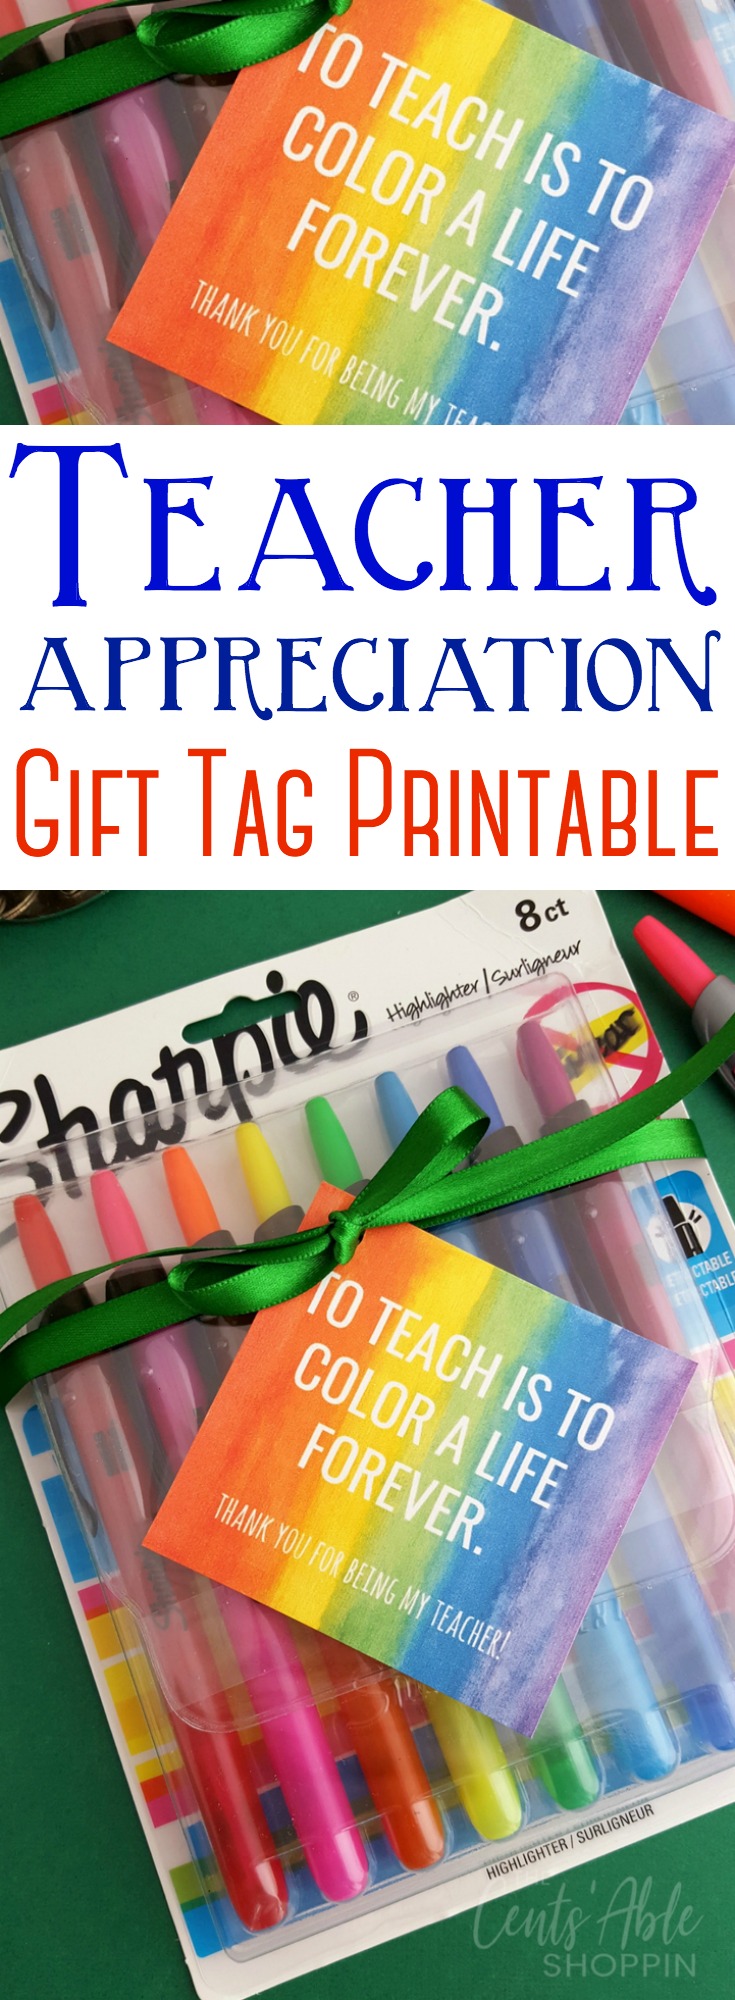 Teacher Appreciation Gift Tag Printable | The CentsAble Shoppin